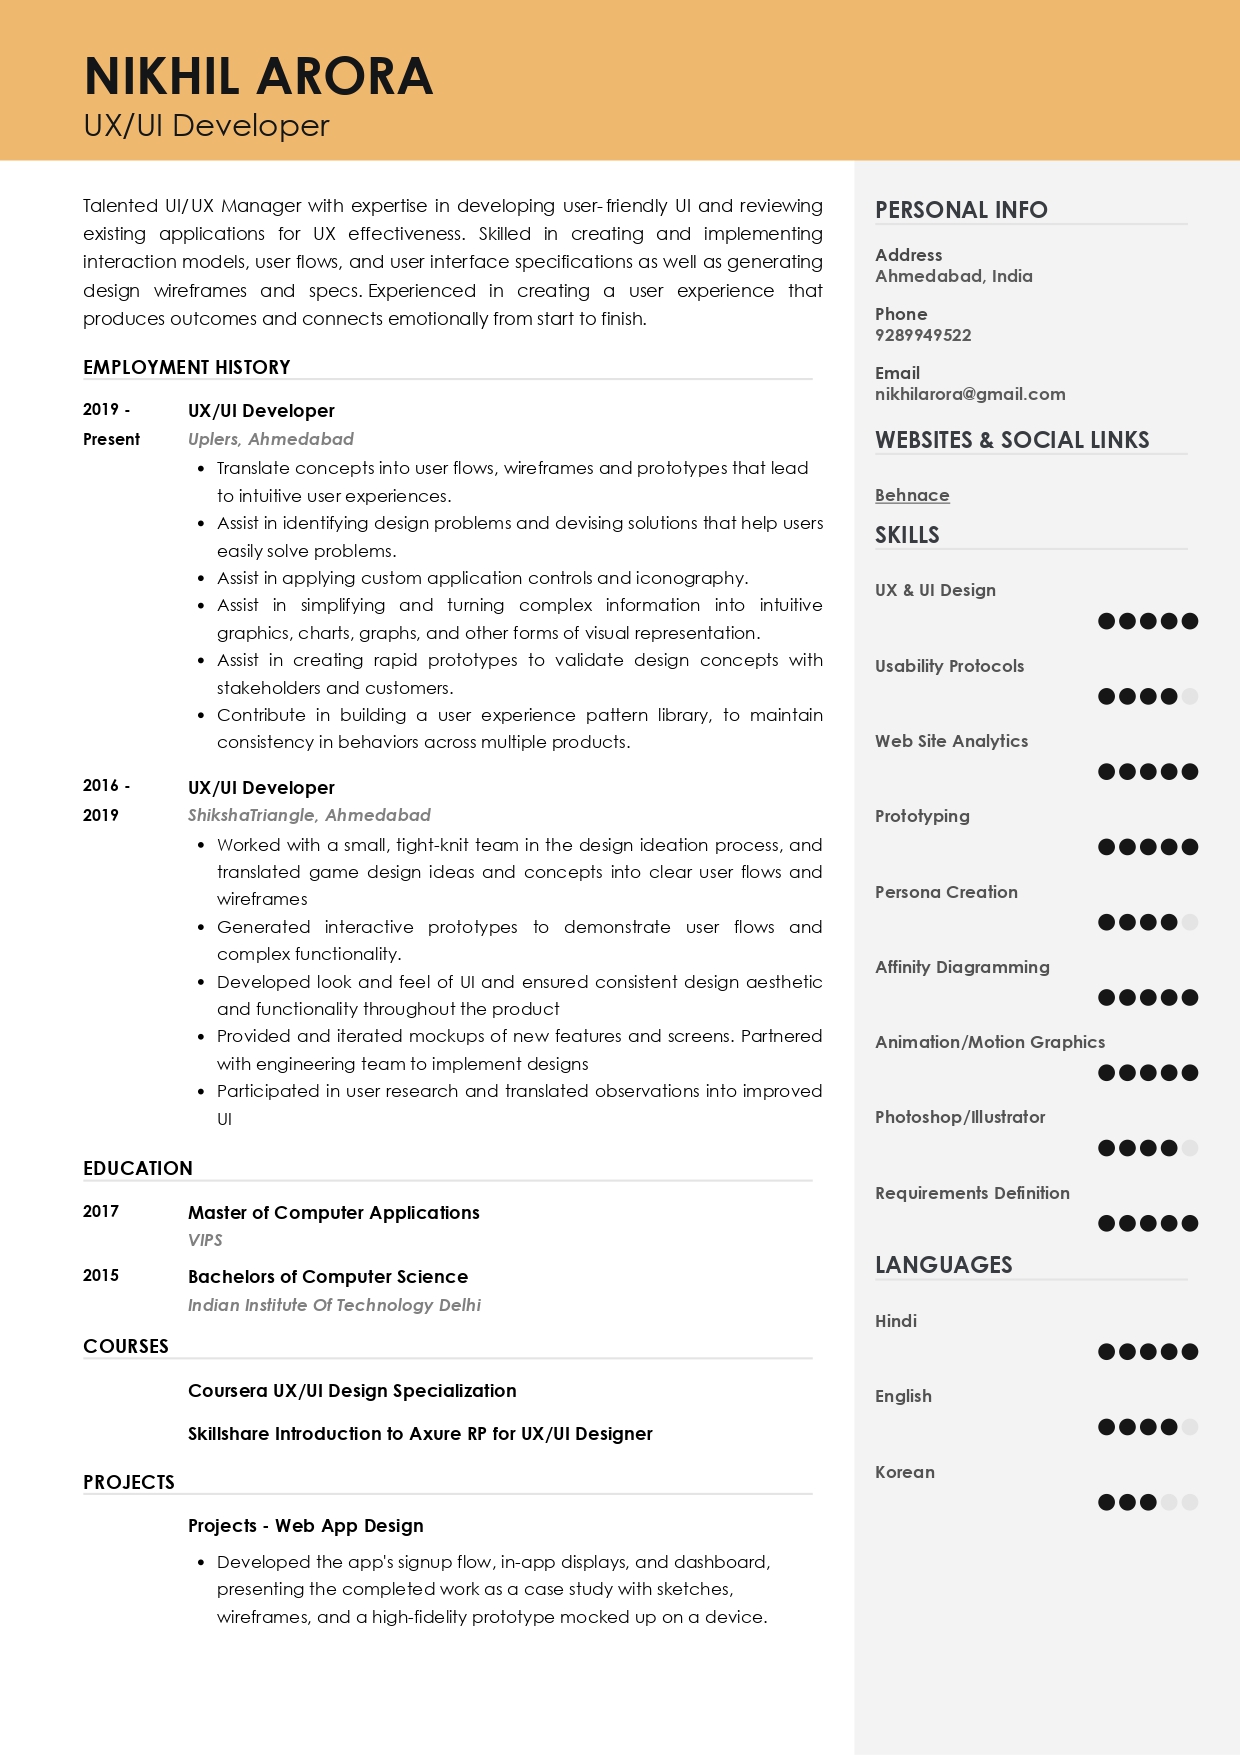 Resume of UX/UI Developer